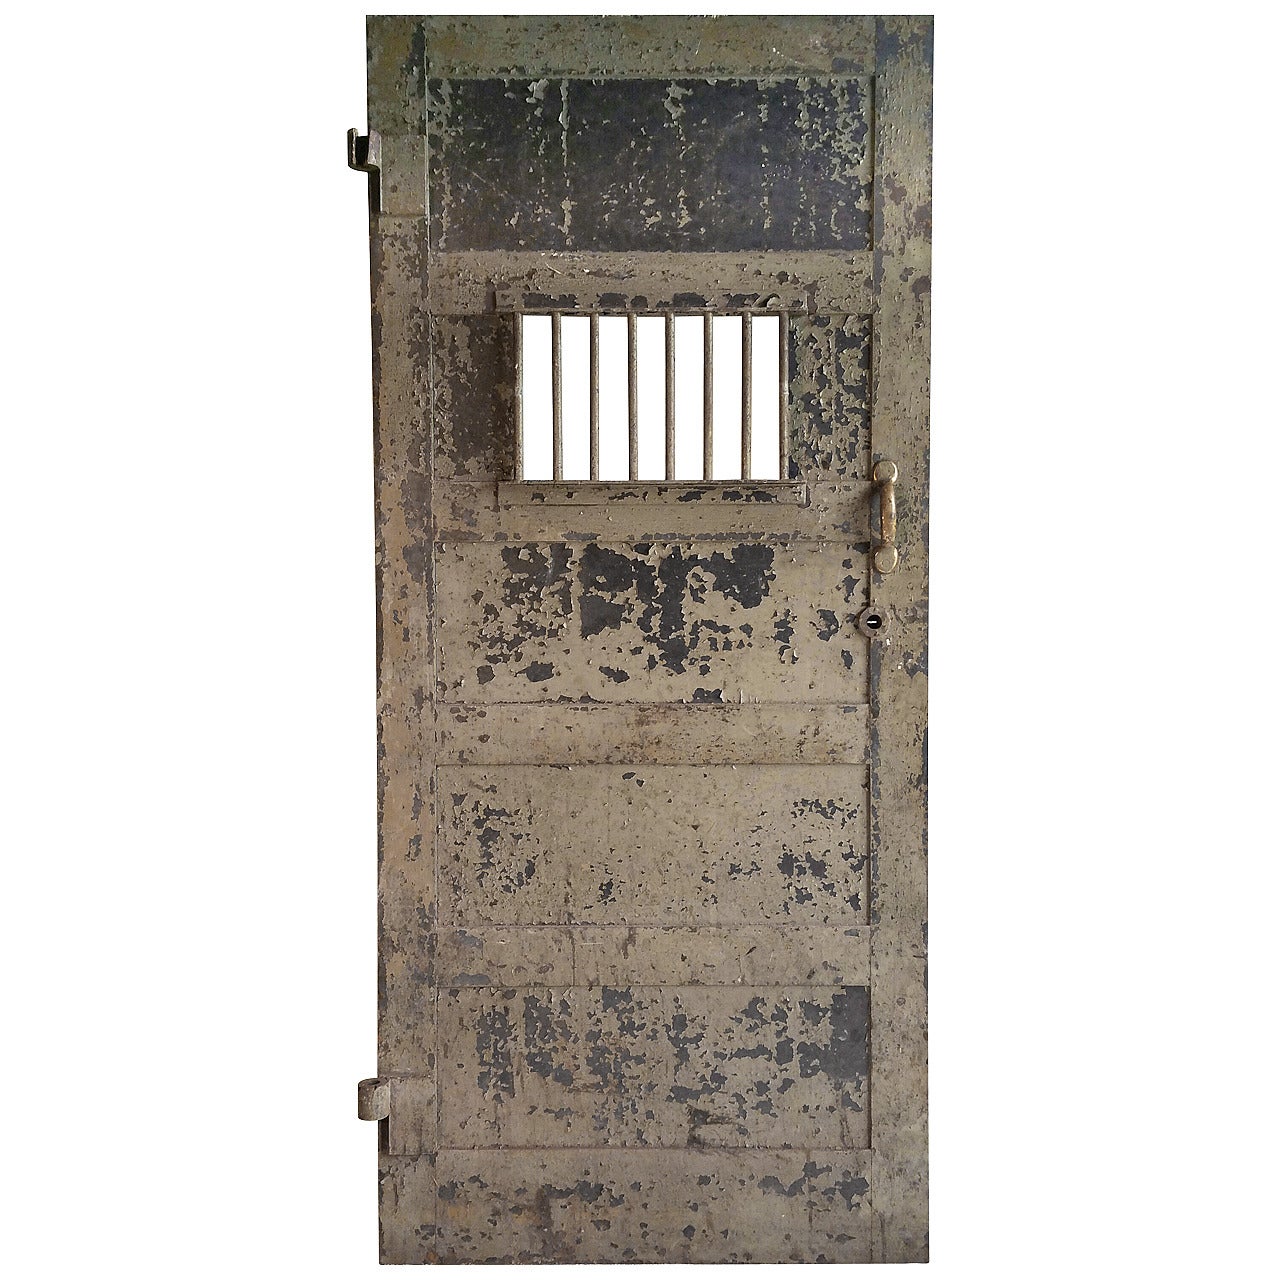 1920s Heavy Steel Prison Door